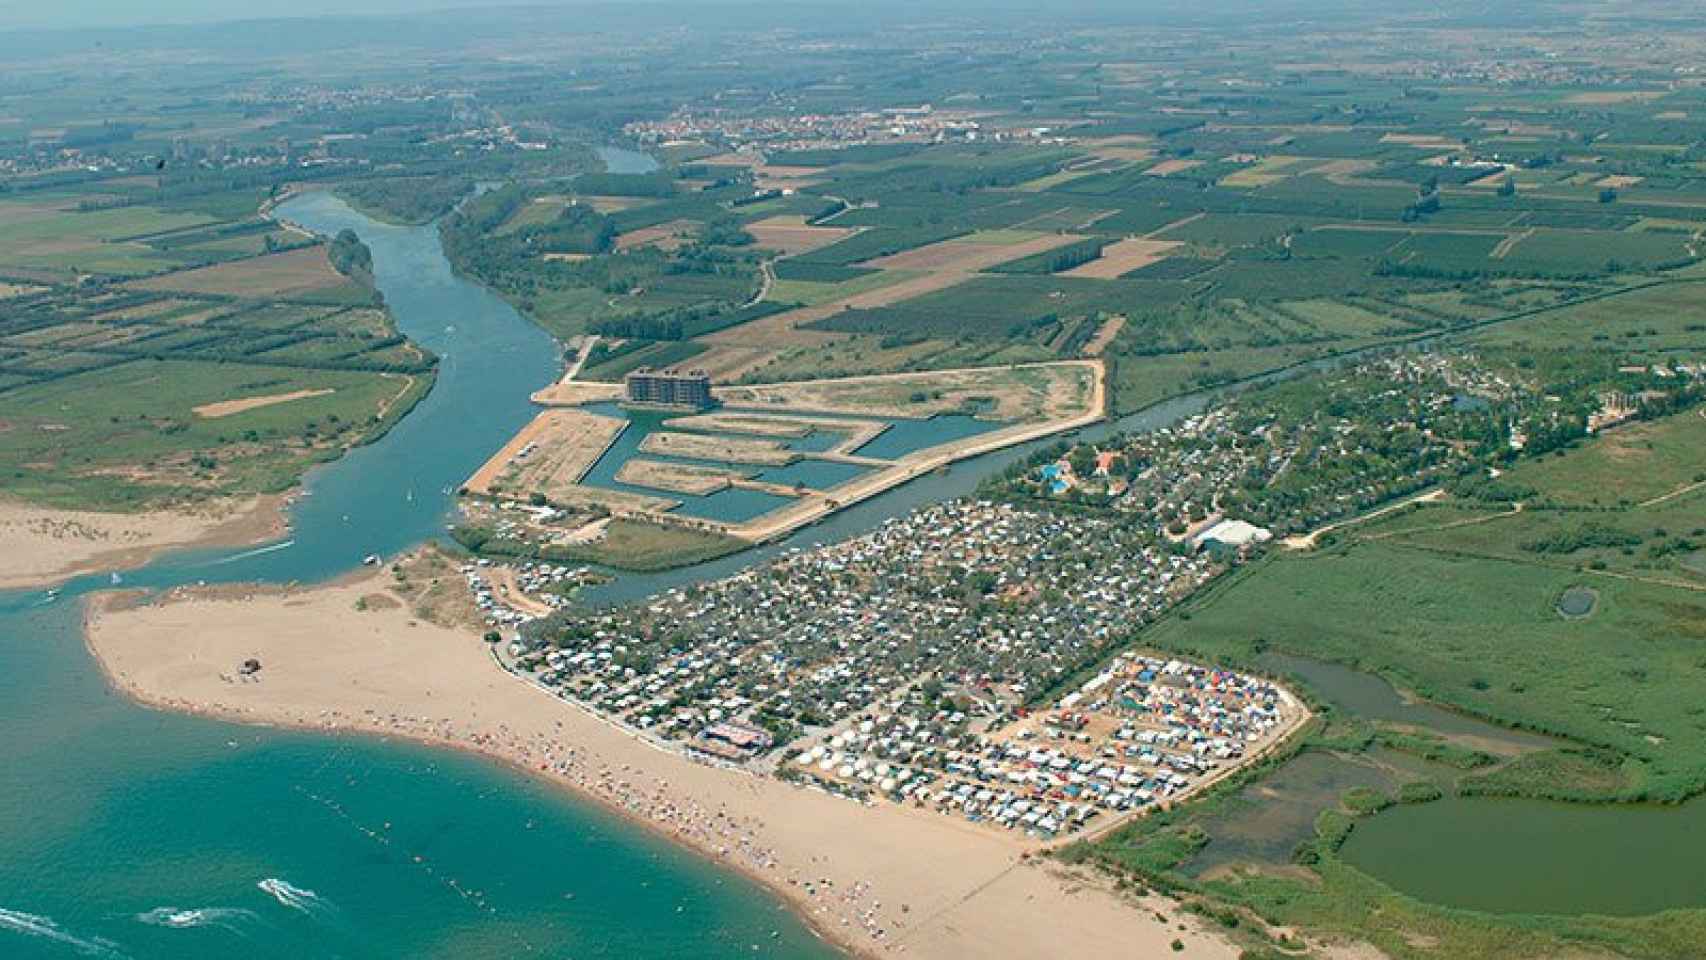 Vista aérea de la desembocadura del Fluvià, donde se había proyectado el complejo urbanístico y el puerto deportivo.